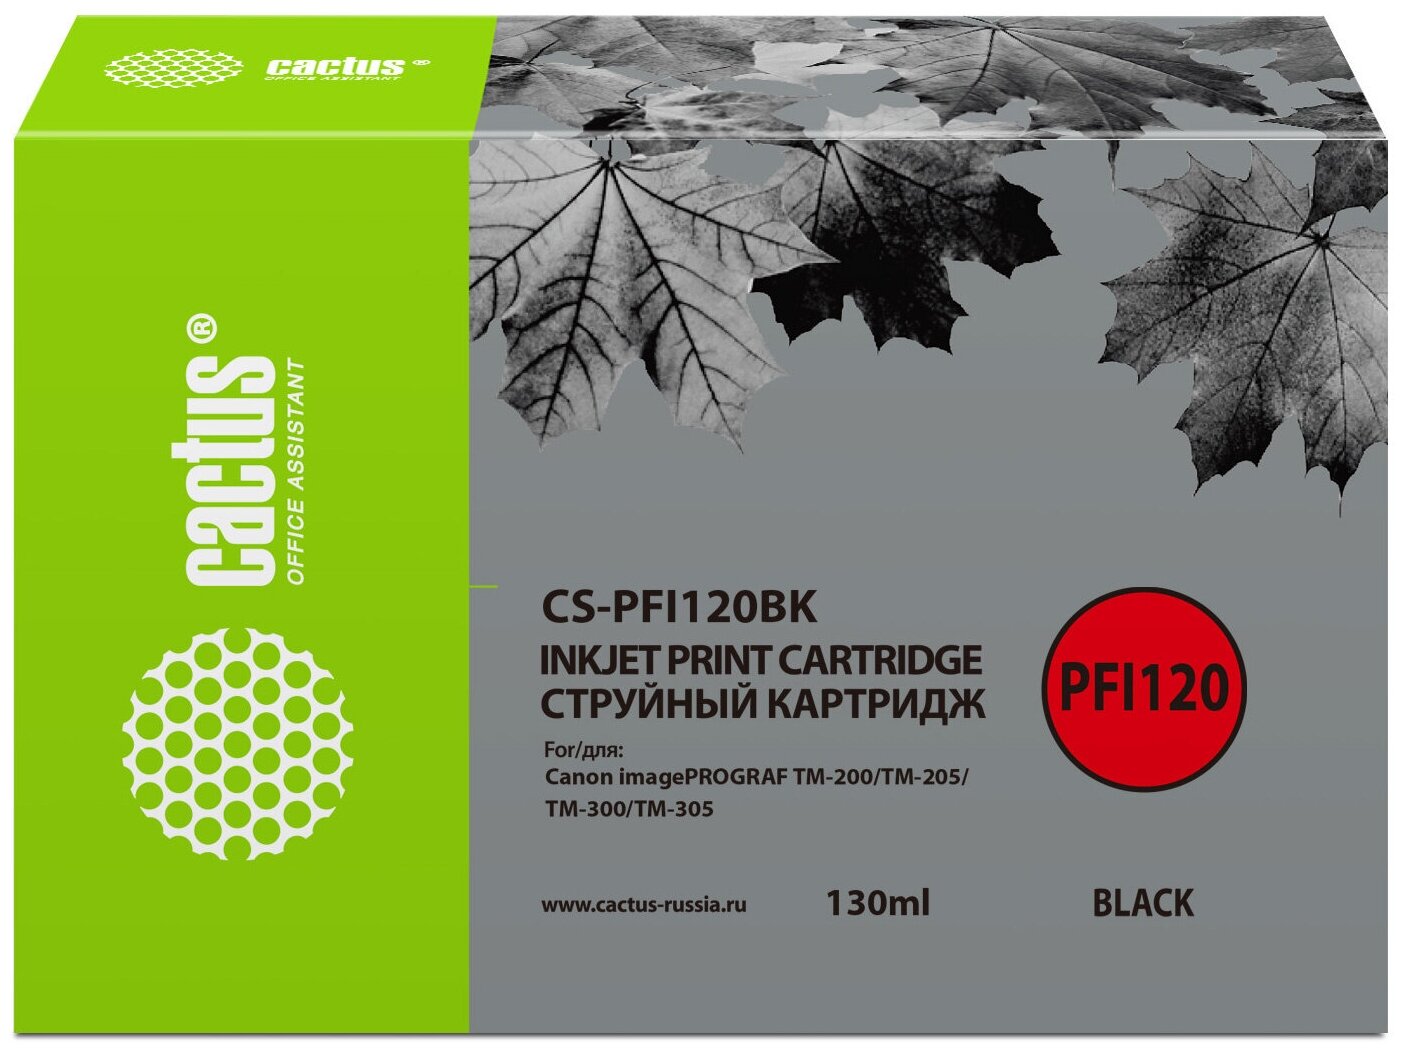 Картридж Cactus CS-PFI120BK черный, для CANON imagePROGRAF TM-200/TM-205/TM-300/TM-305